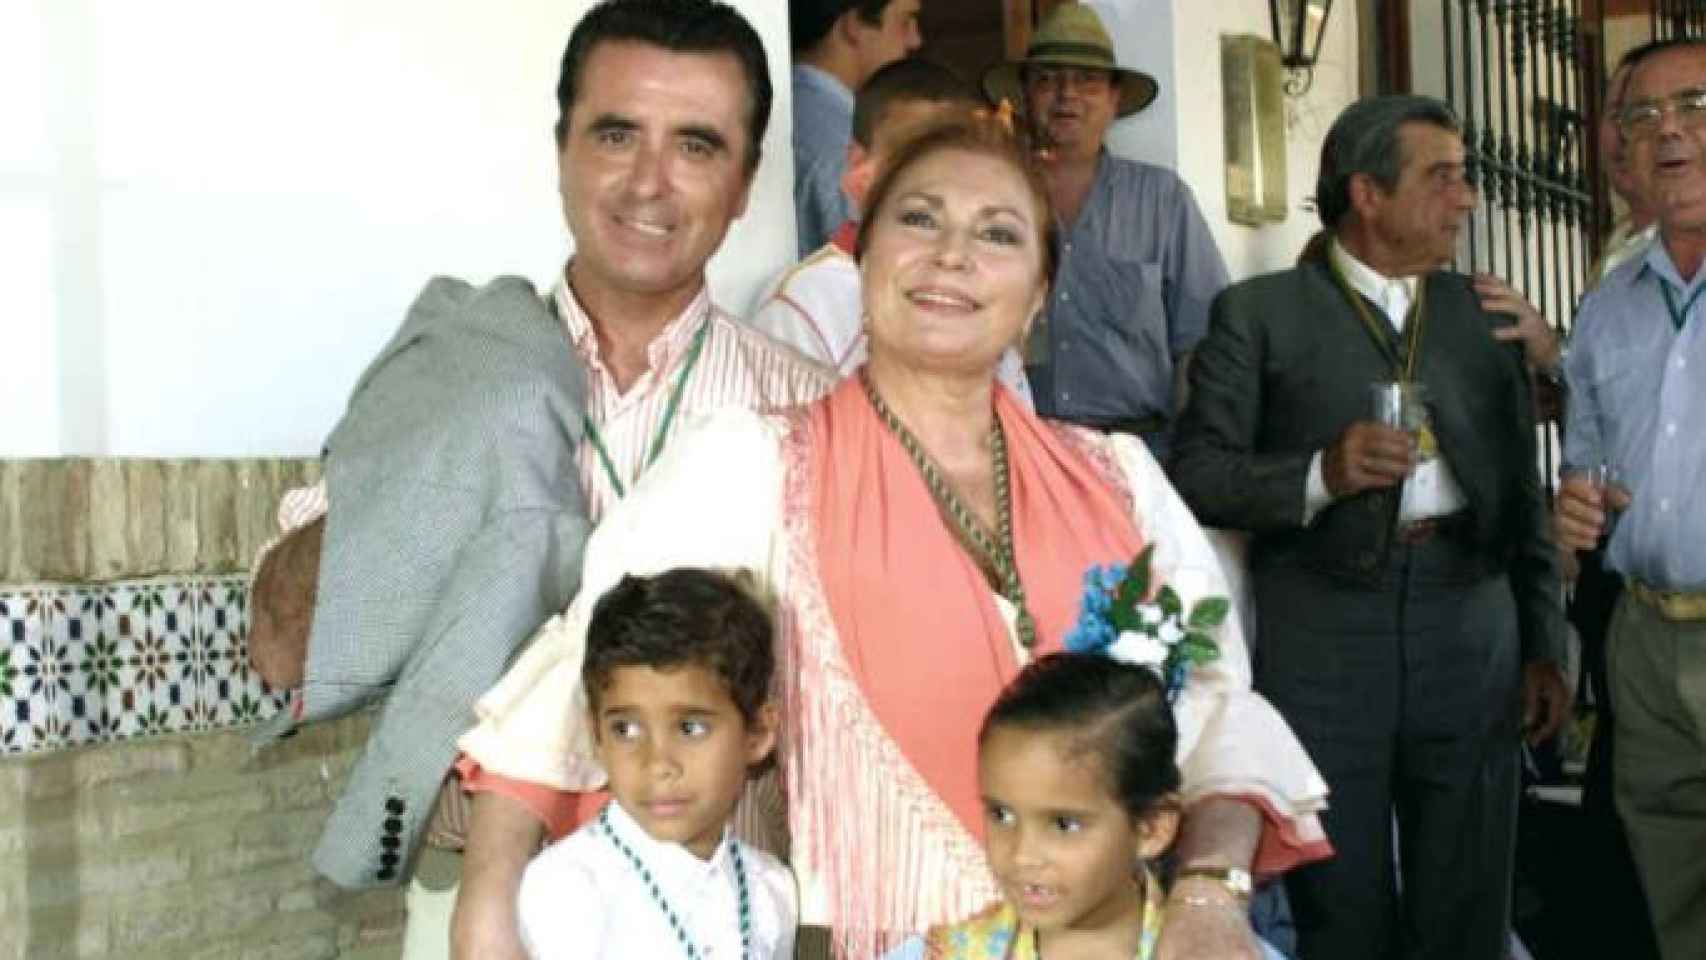 José Ortega Cano y Rocío Jurado junto a sus hijos en 2002.